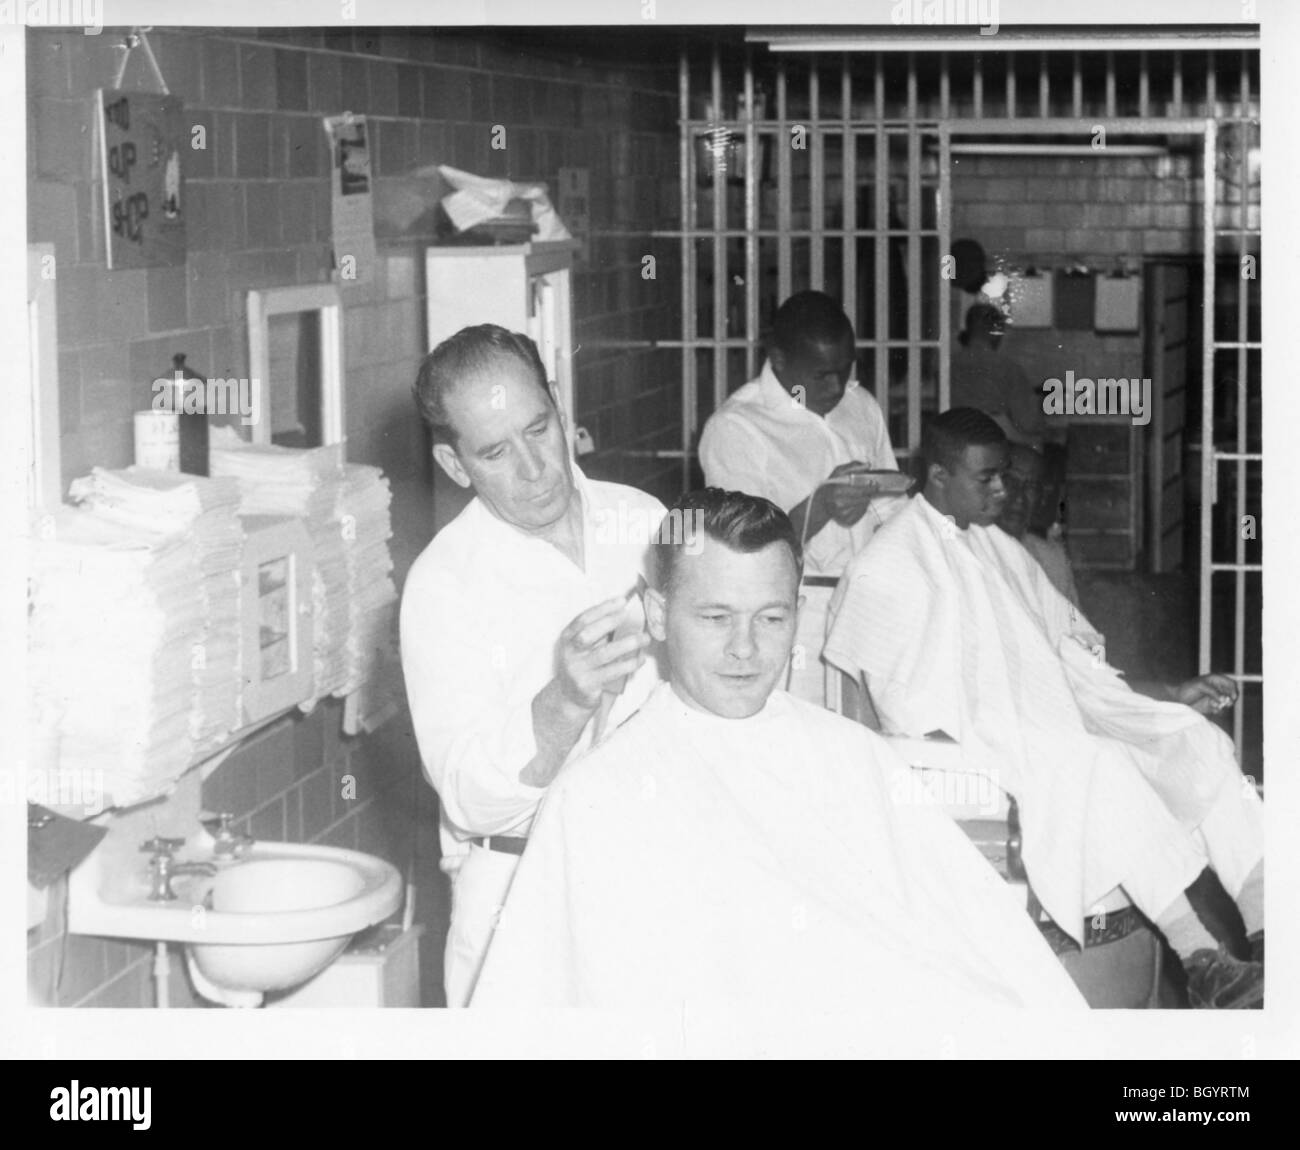 Häftling, ein Mitglied des Personals einen Haarschnitt zu geben. Metallscheren und Rasiermesser verwendet wurden. Lincoln, Nebraska, USA. 1940er Jahre, 1950er Jahre ca Stockfoto